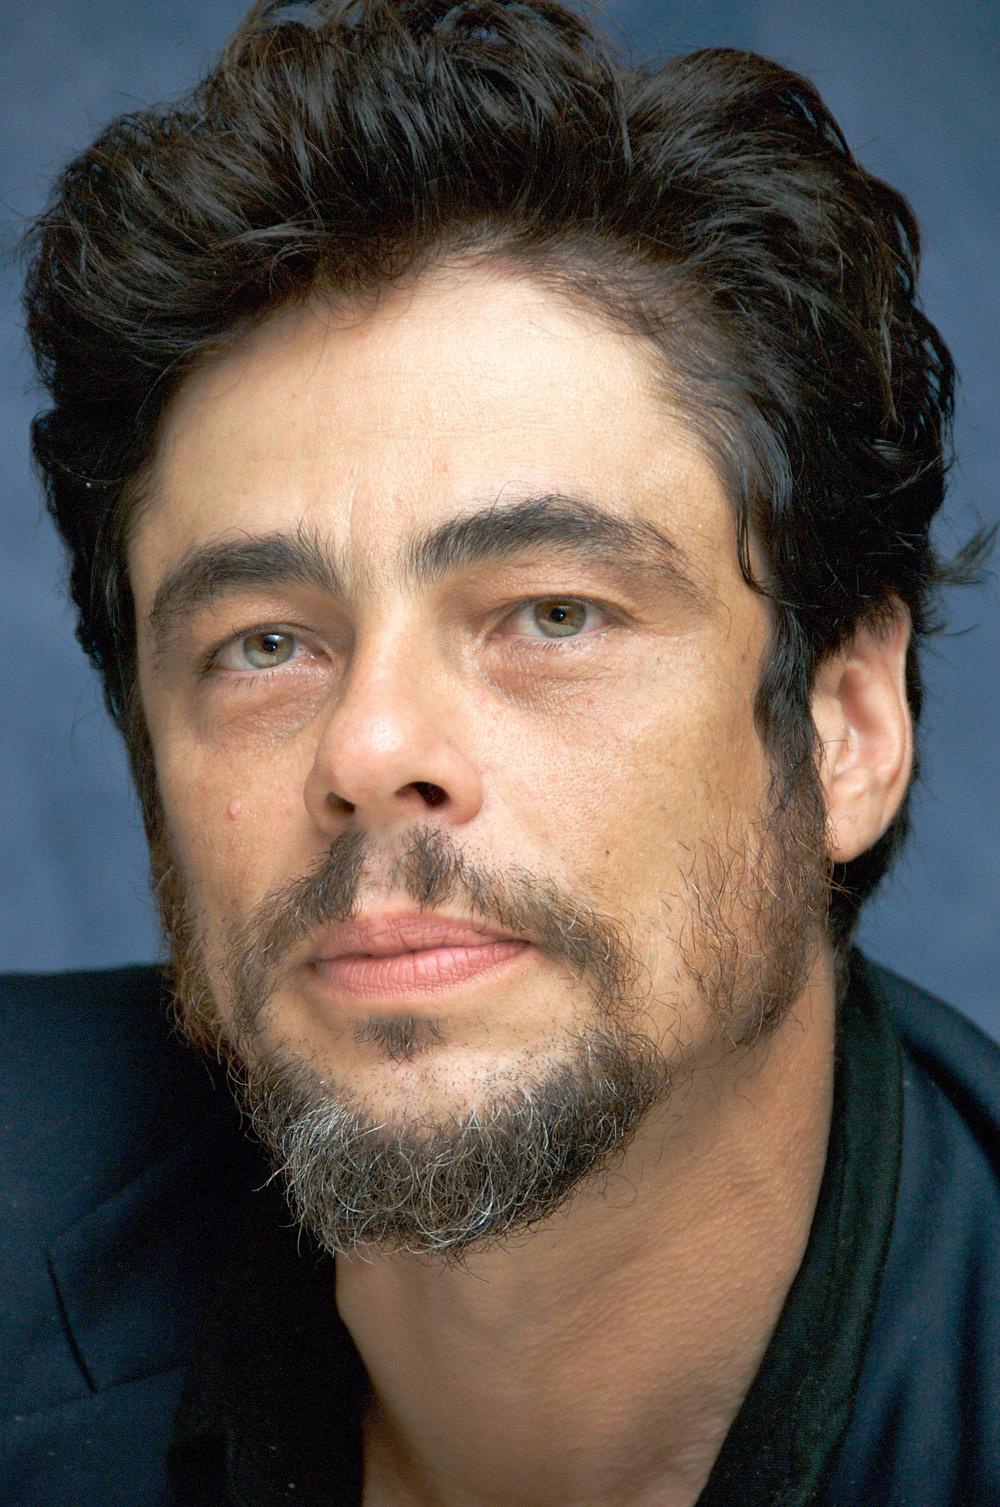 Photo №5649 Benicio Del Toro.